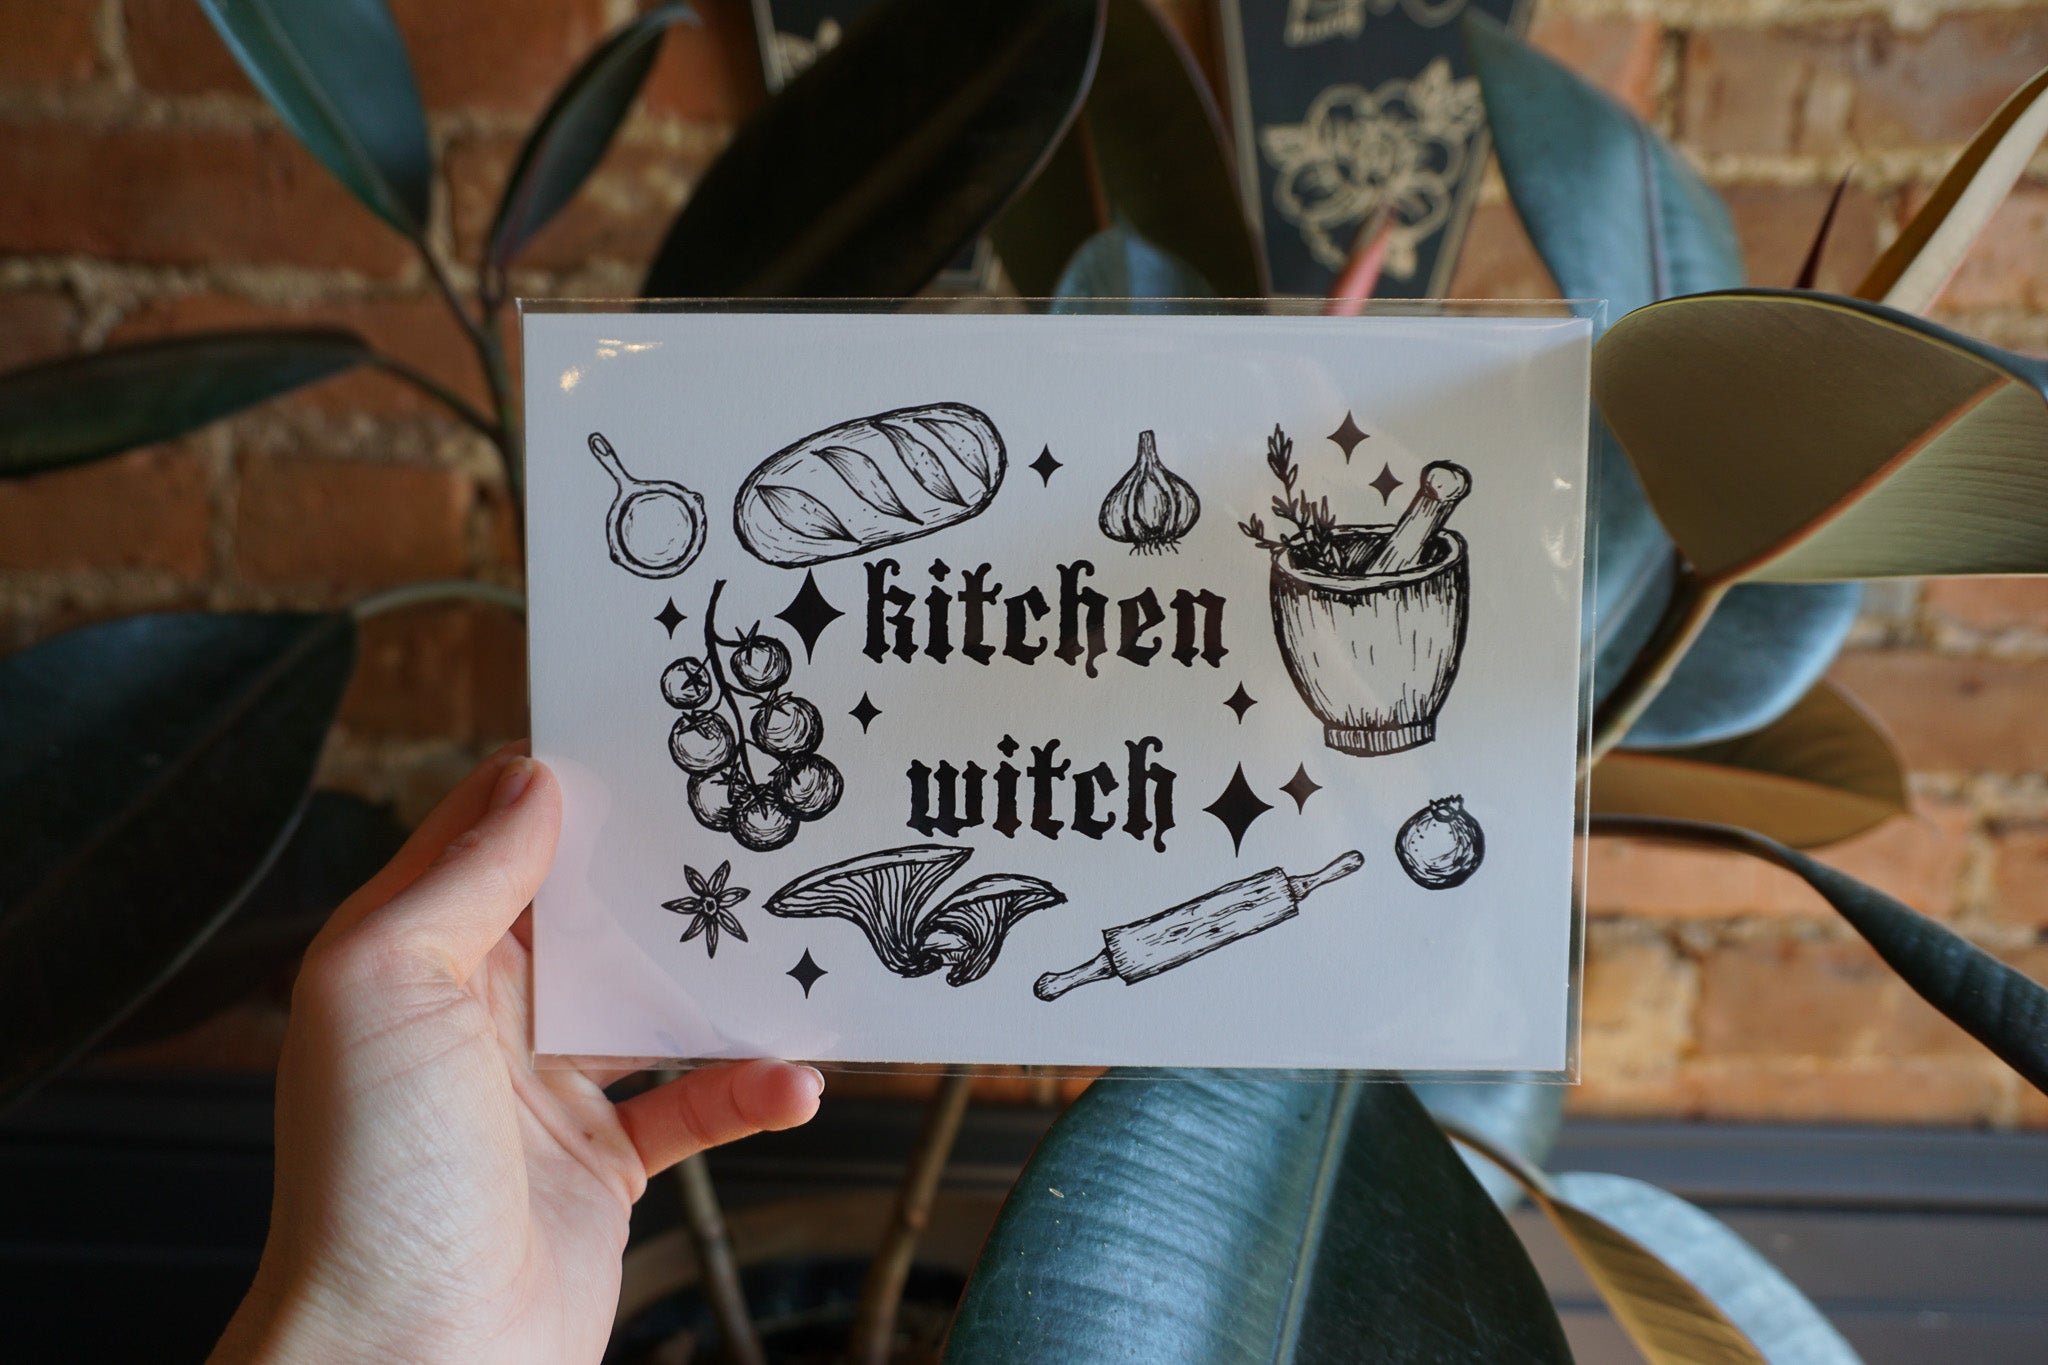 "Kitchen Witch" Print